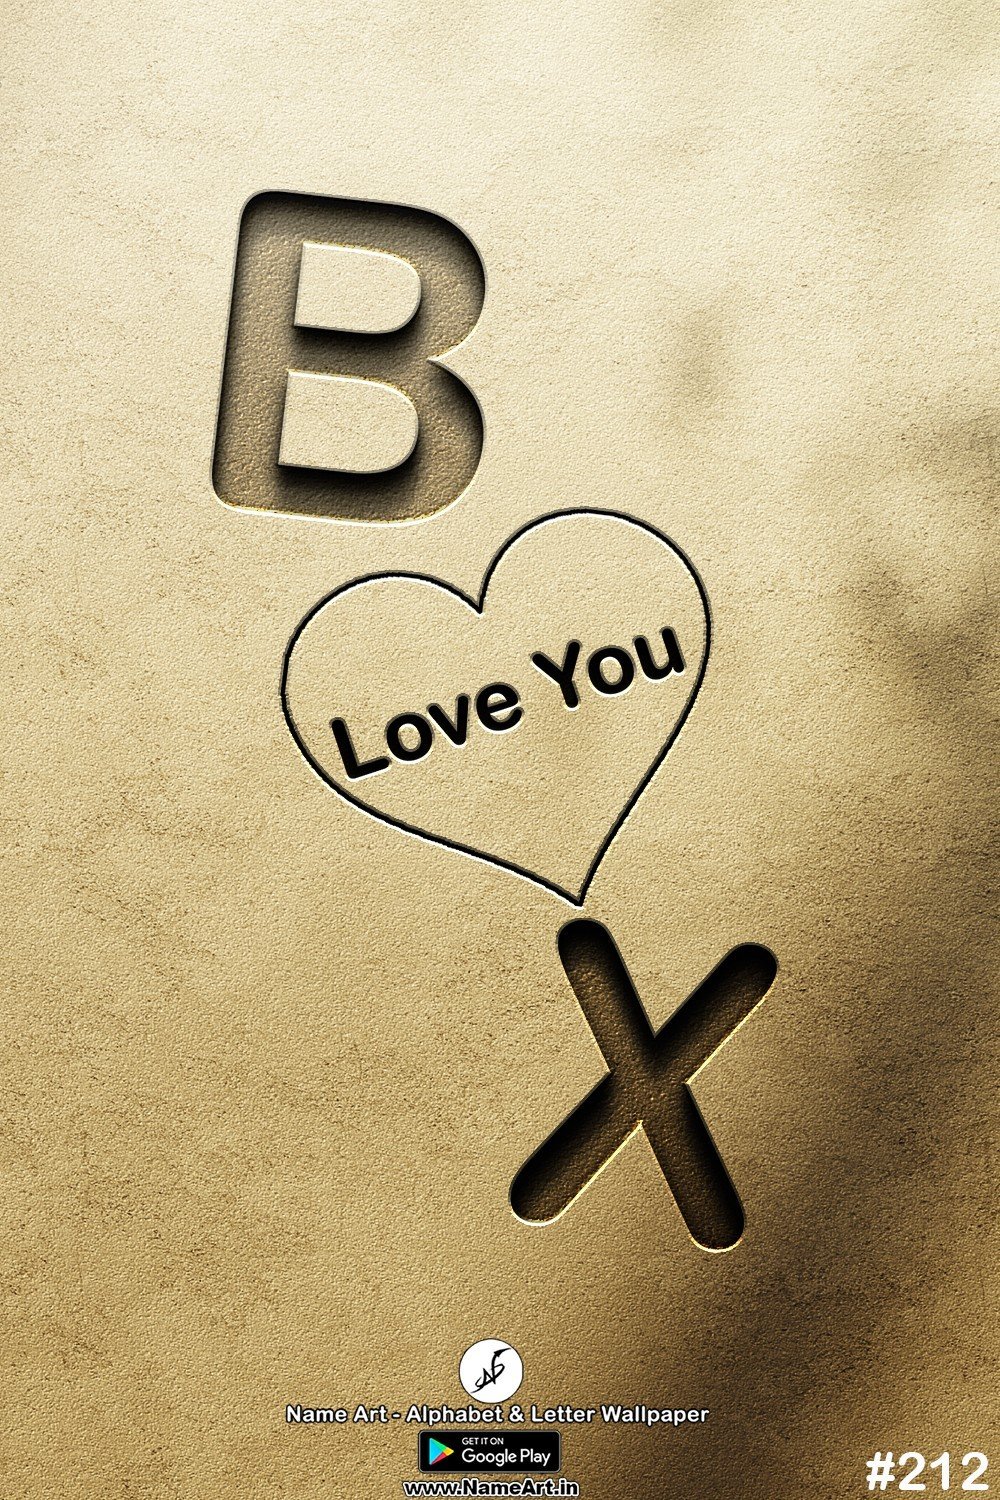 BX | Whatsapp Status DP BX | BX Love Status Cute Couples Whatsapp Status DP !! | New Whatsapp Status DP BX Images |